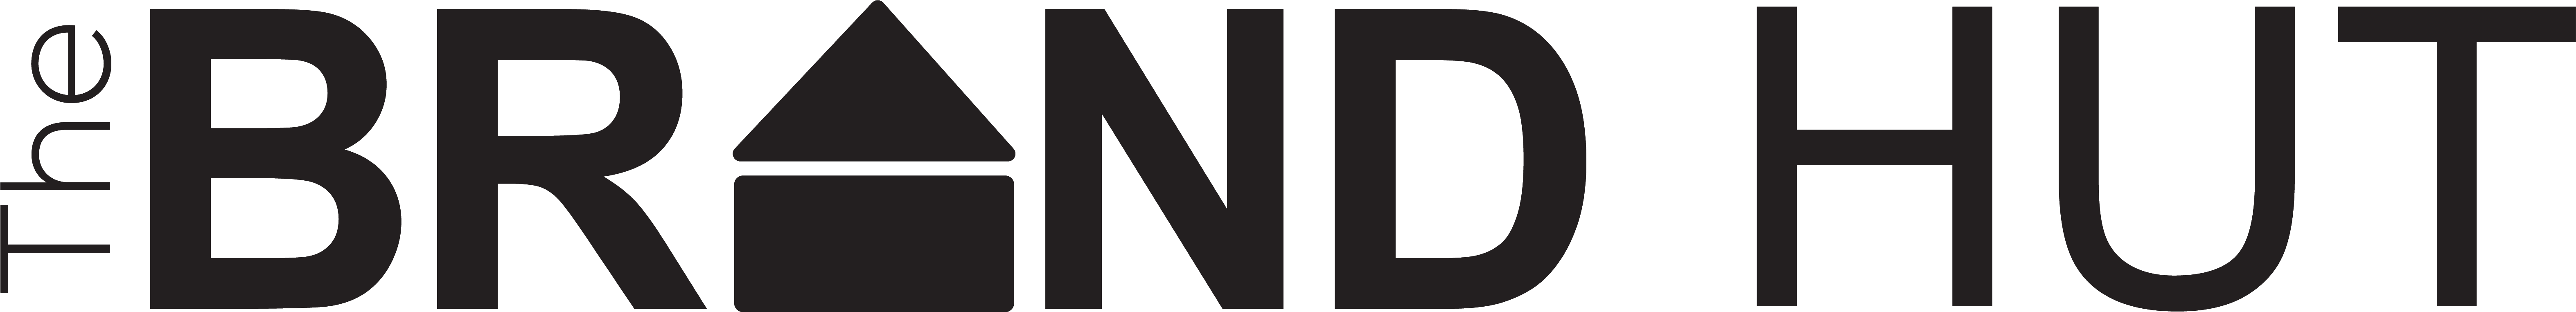 tbhnew logo